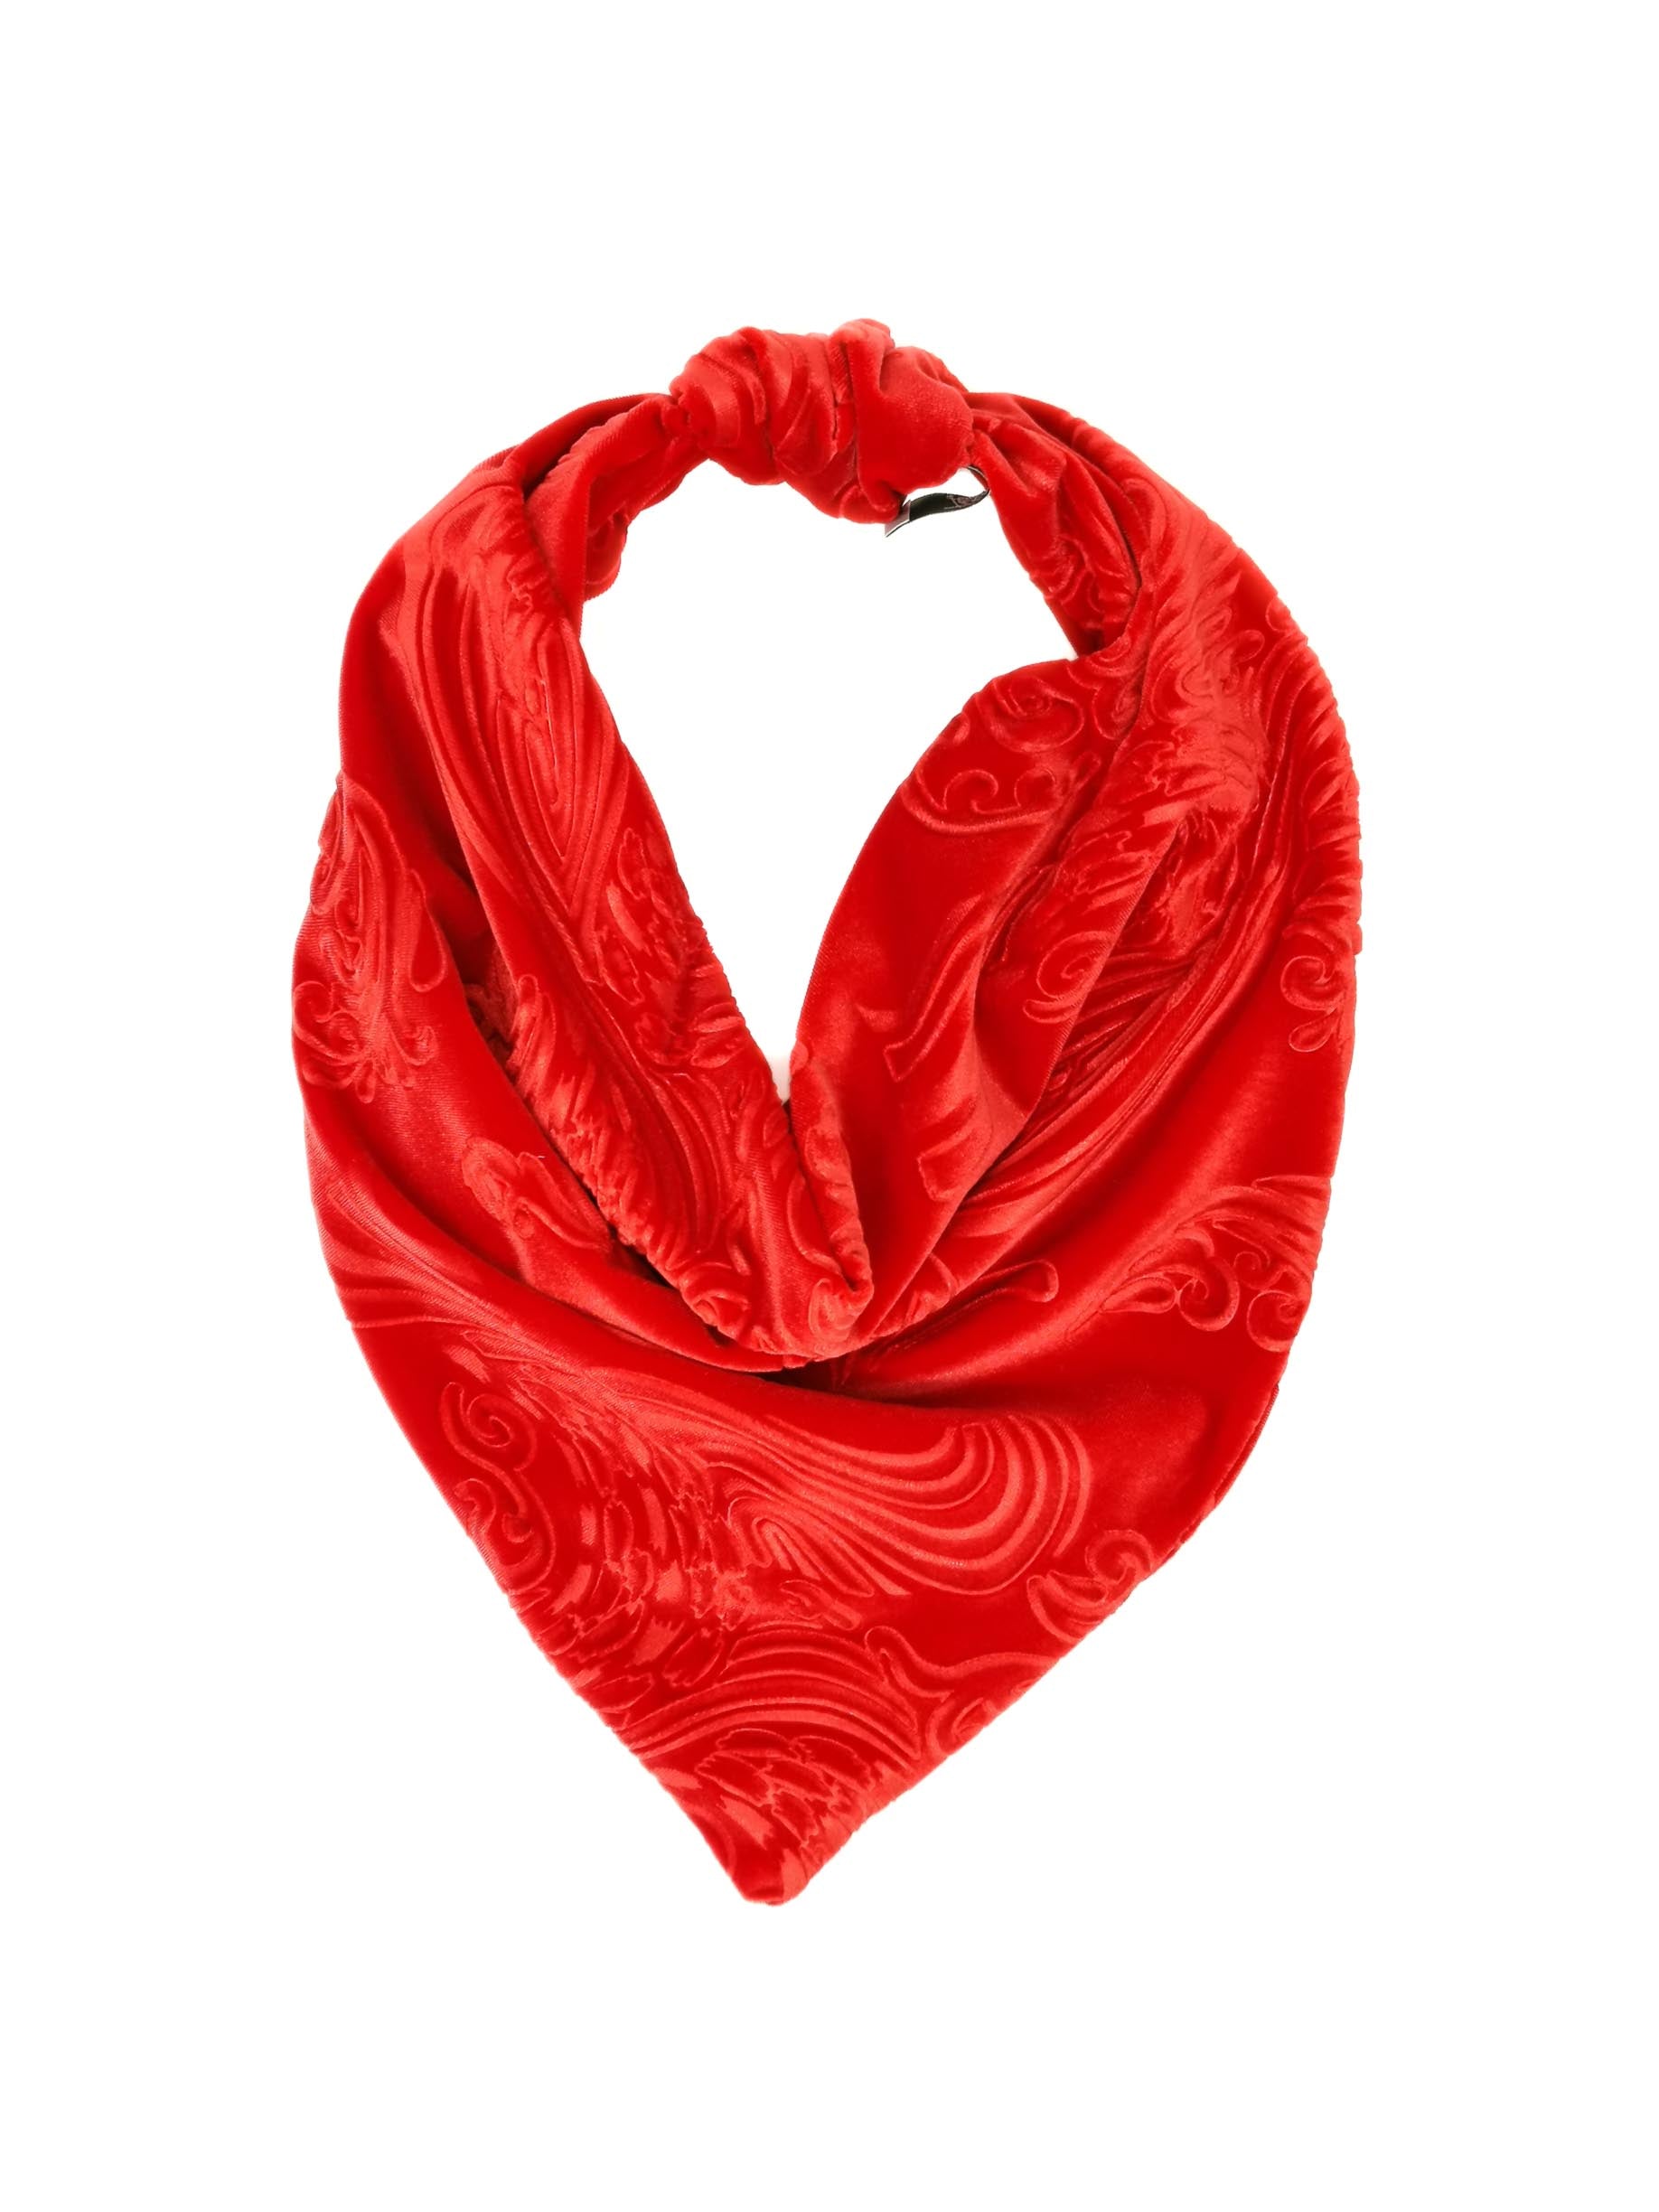 Bandana in velluto devoré rosso  Accessori fatti a mano Tétè – Tétè  Handmade Accessories